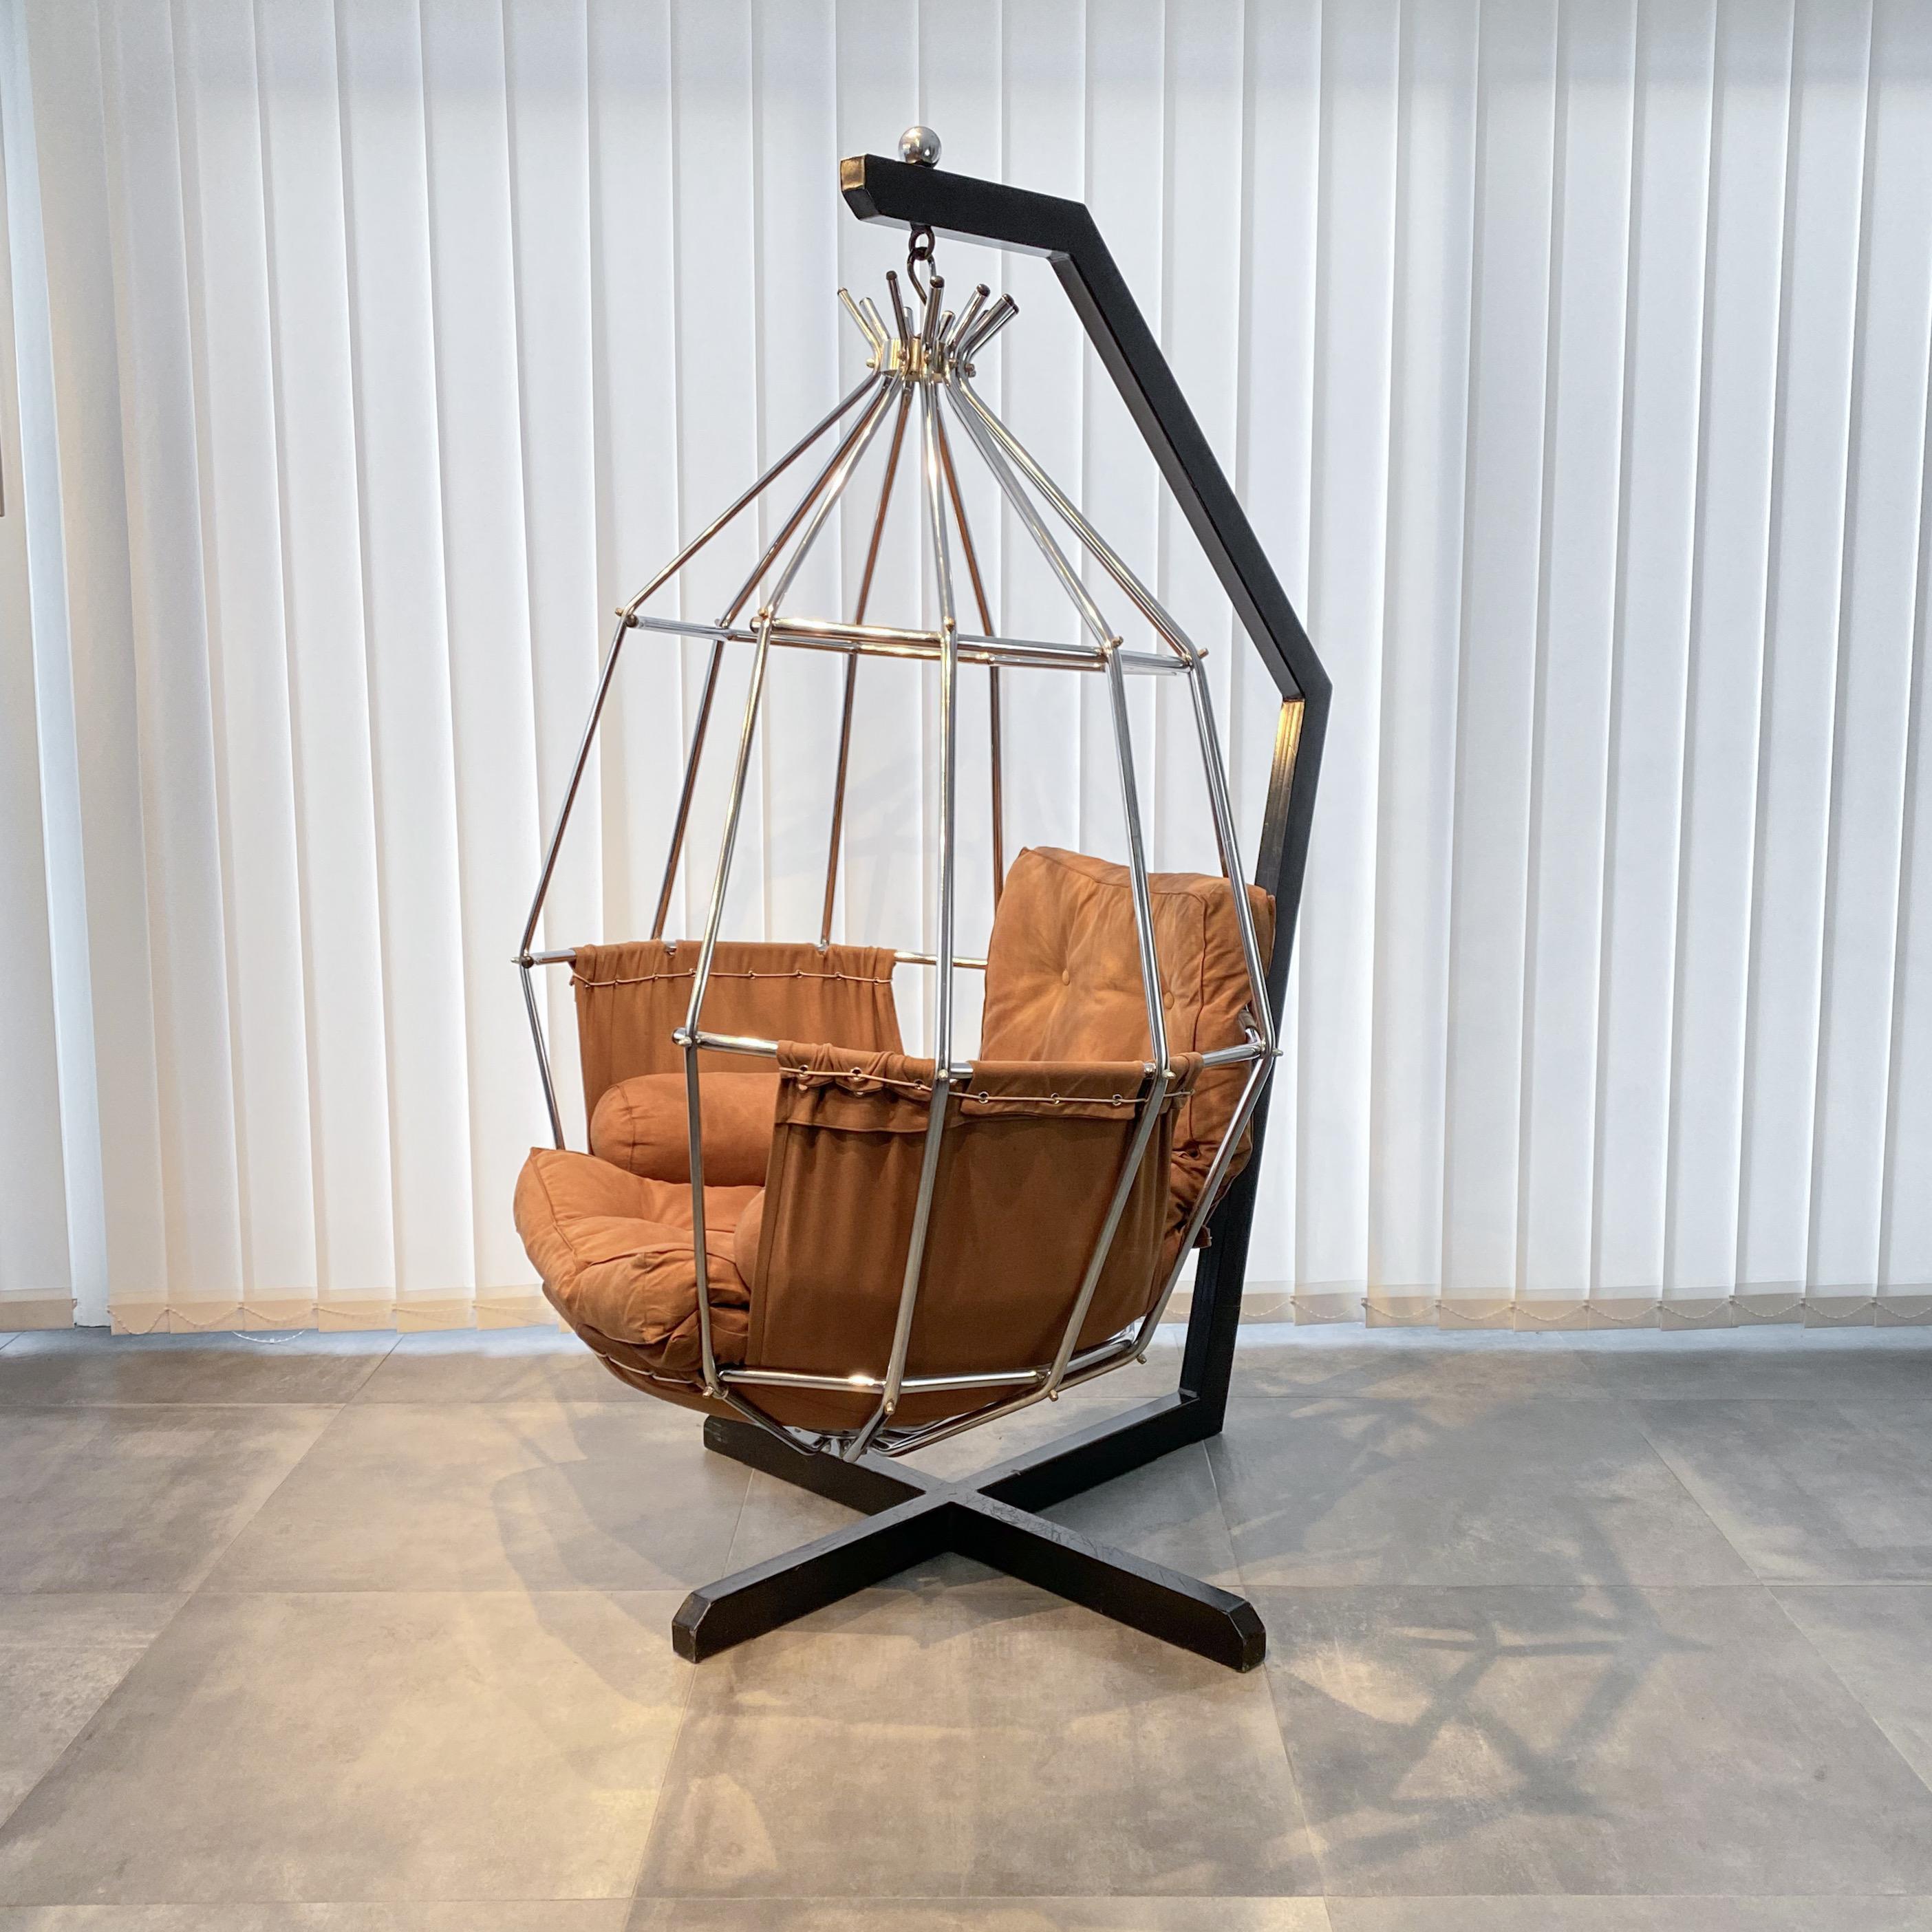 Hängesessel Gojan, entworfen von dem dänischen Architekten Ib Arberg für den schwedischen Hersteller ABRA Möbler. Dieser bemerkenswerte Stuhl besteht aus einem verchromten Metallkäfig, der an einem schwarzen Stahlgestell aufgehängt ist. Die